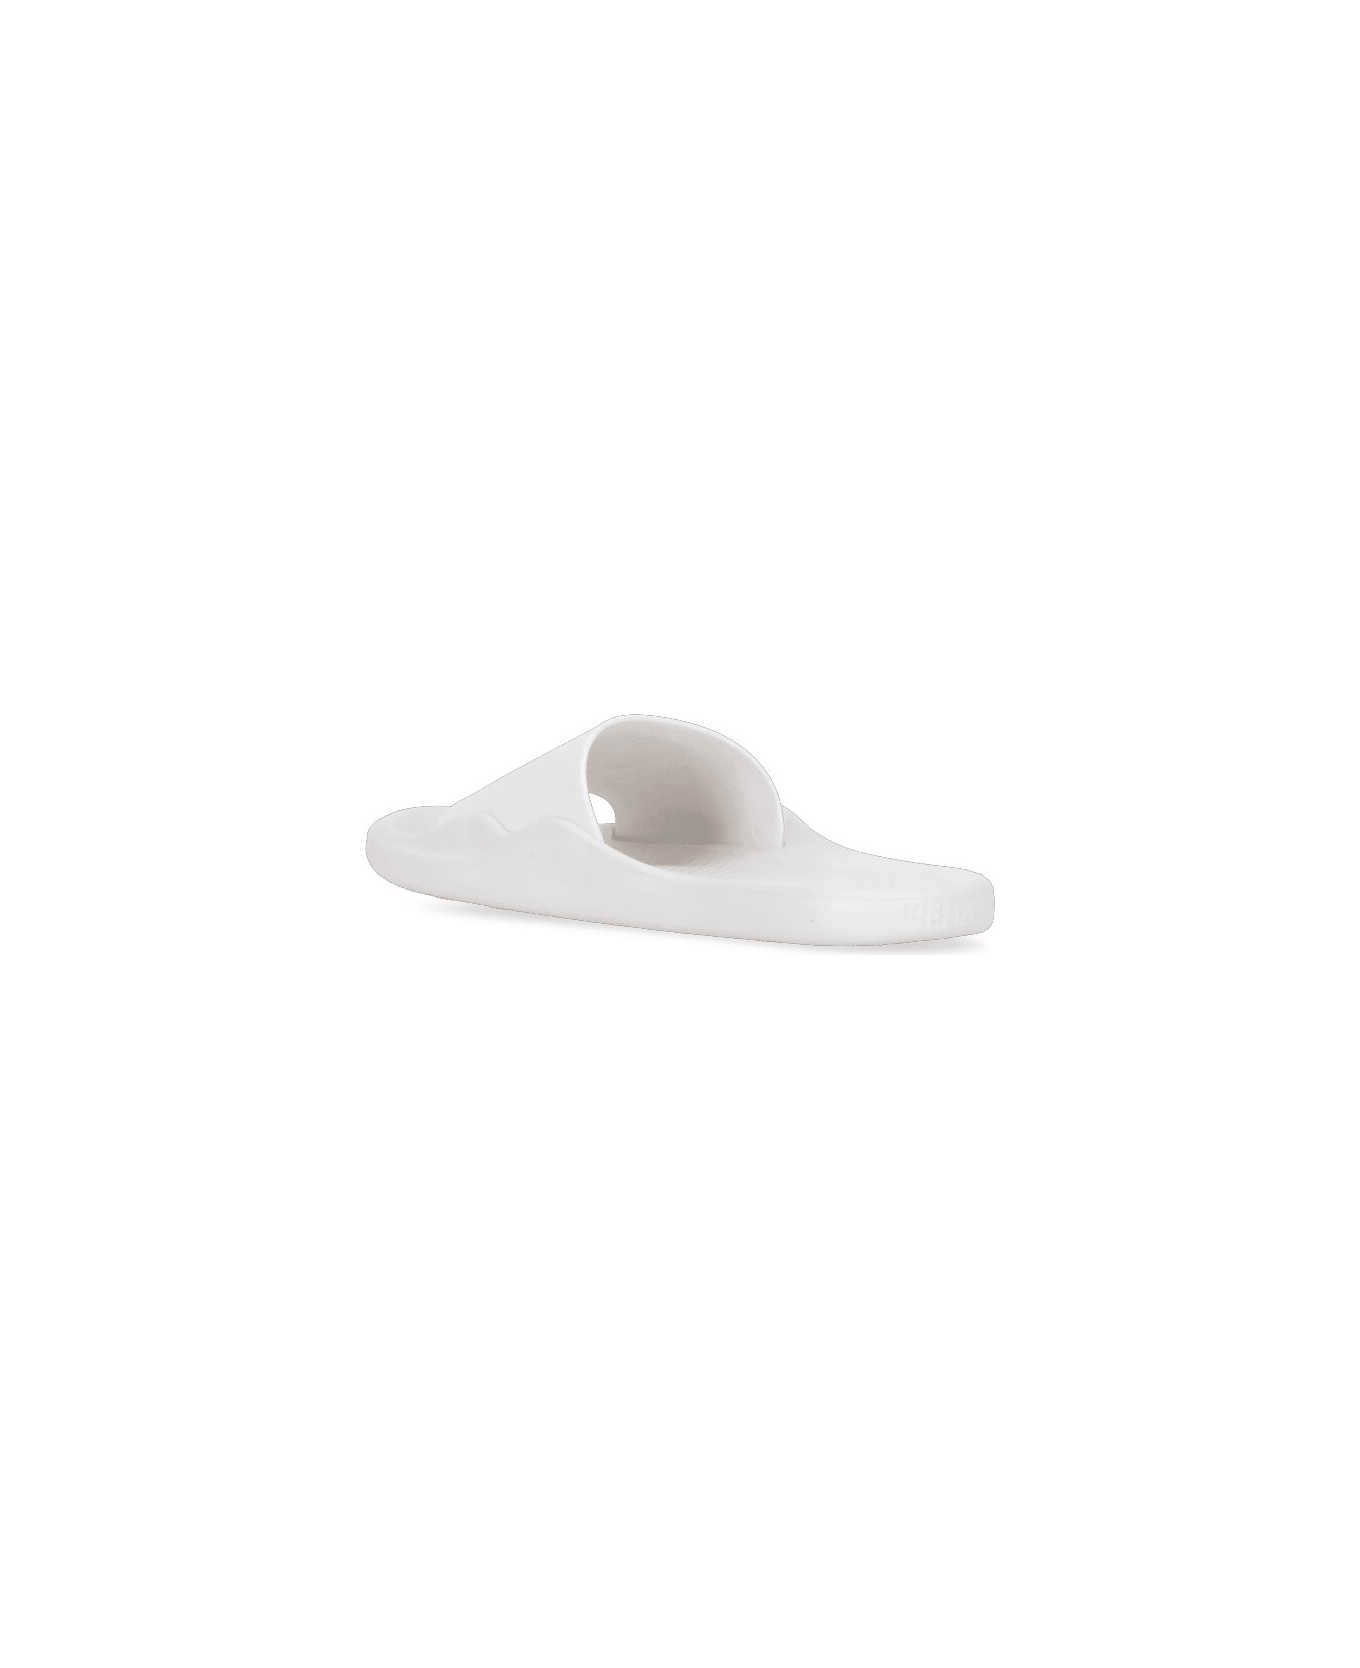 Kenzo Pool Slippers - White サンダル